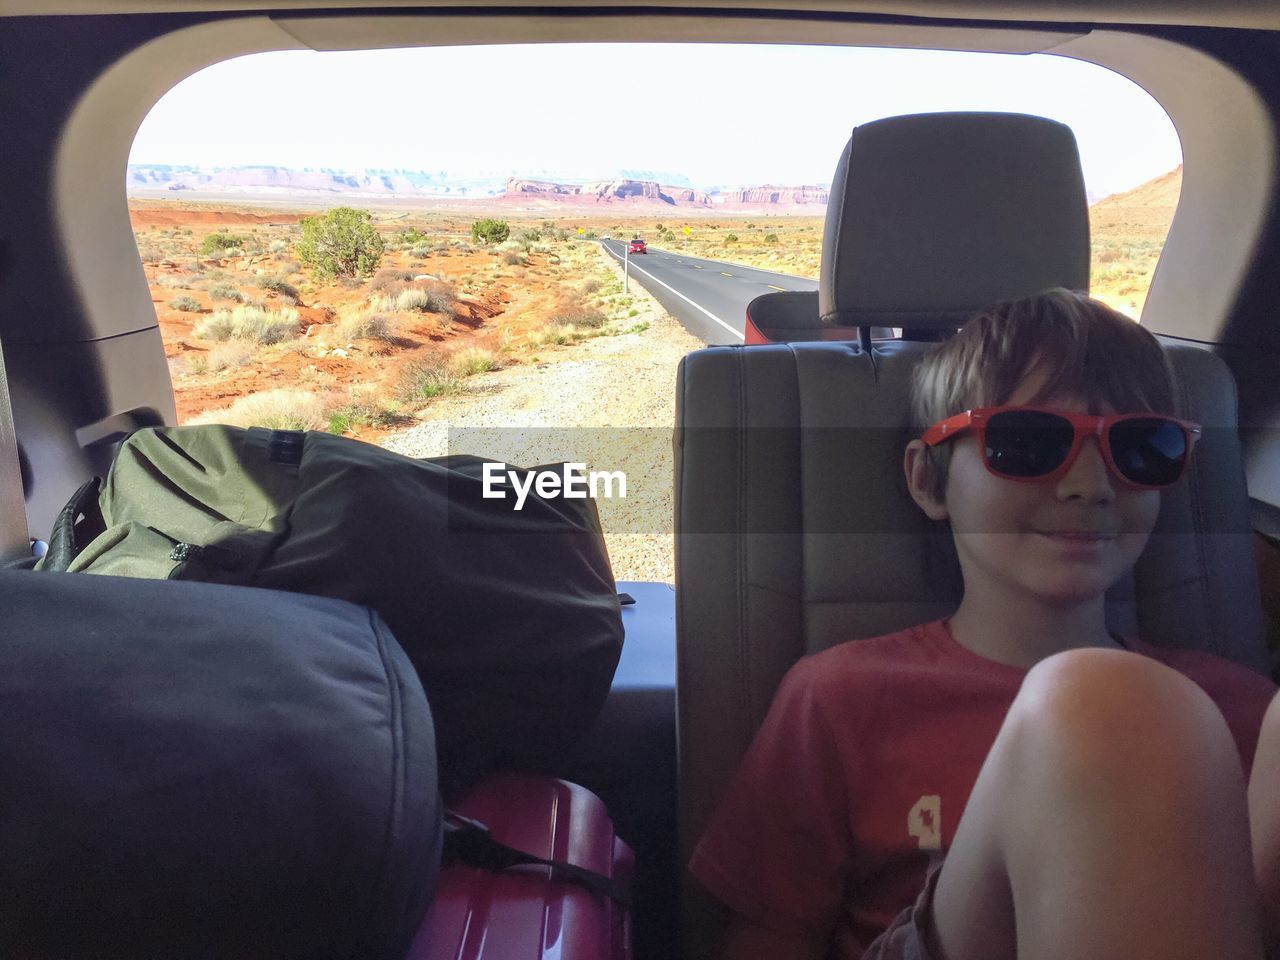 Boy on backseat during road trip